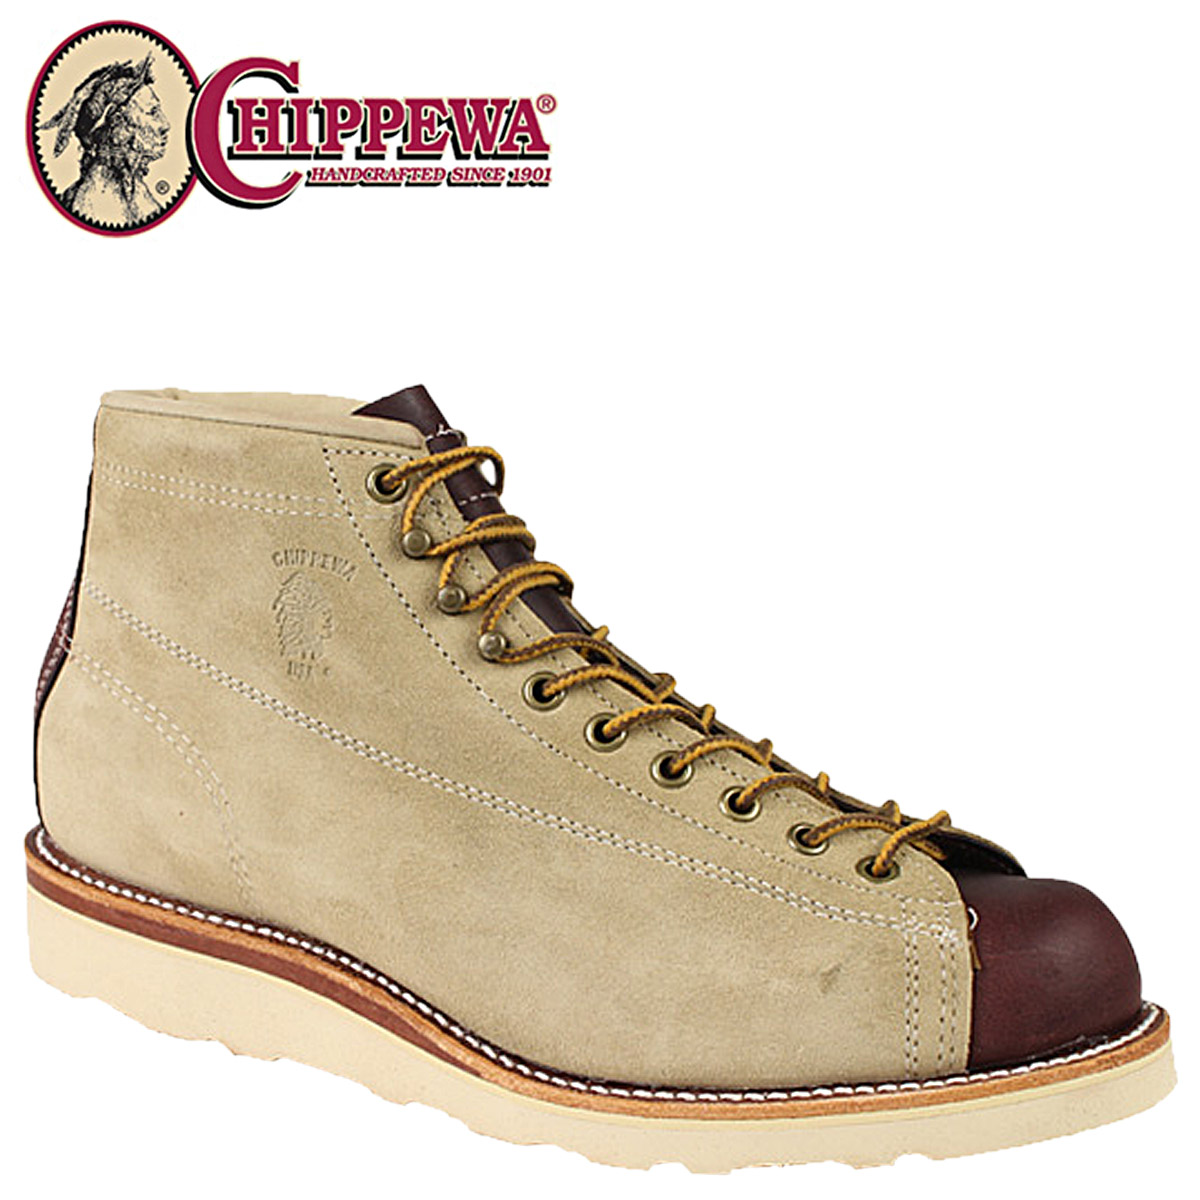 chippewa monkey boots